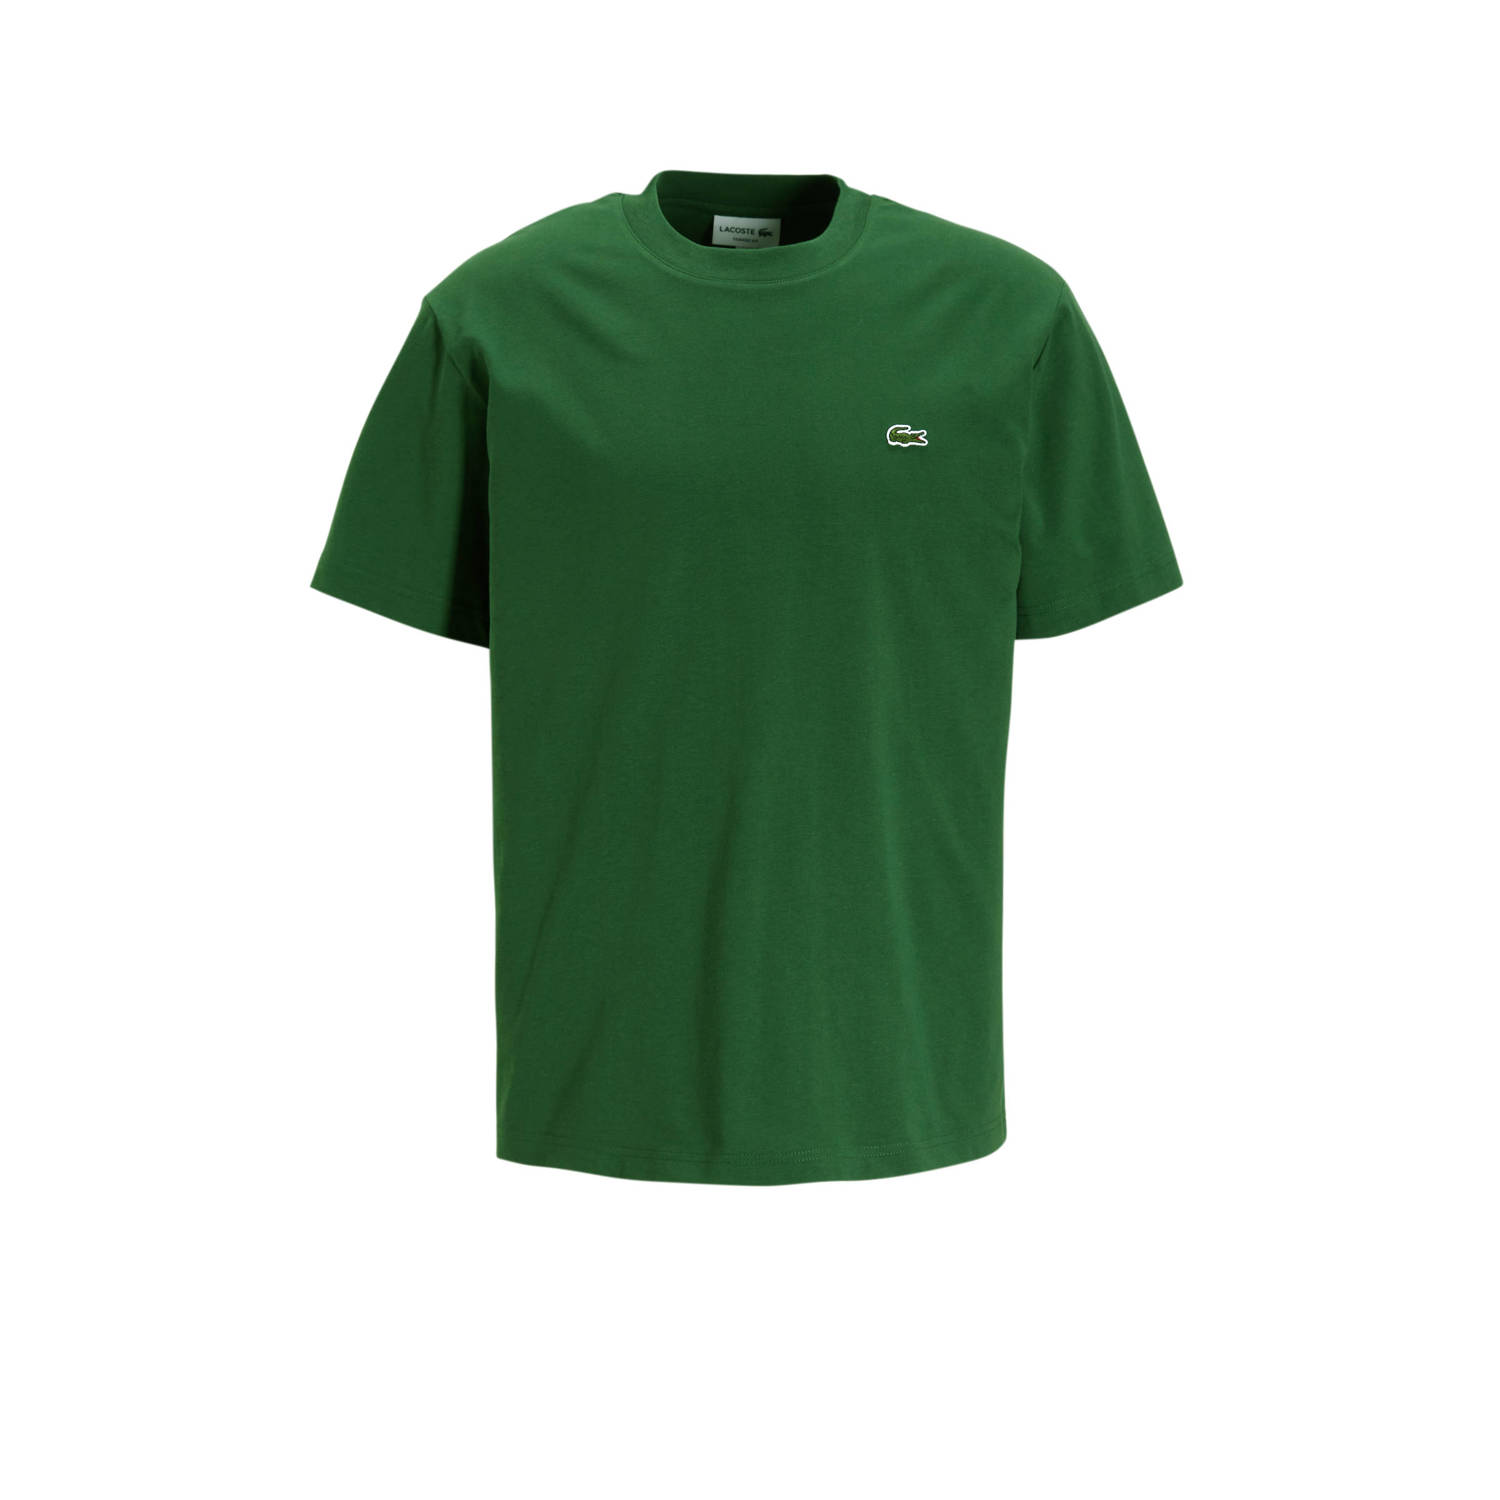 Lacoste T-shirt met logo groen